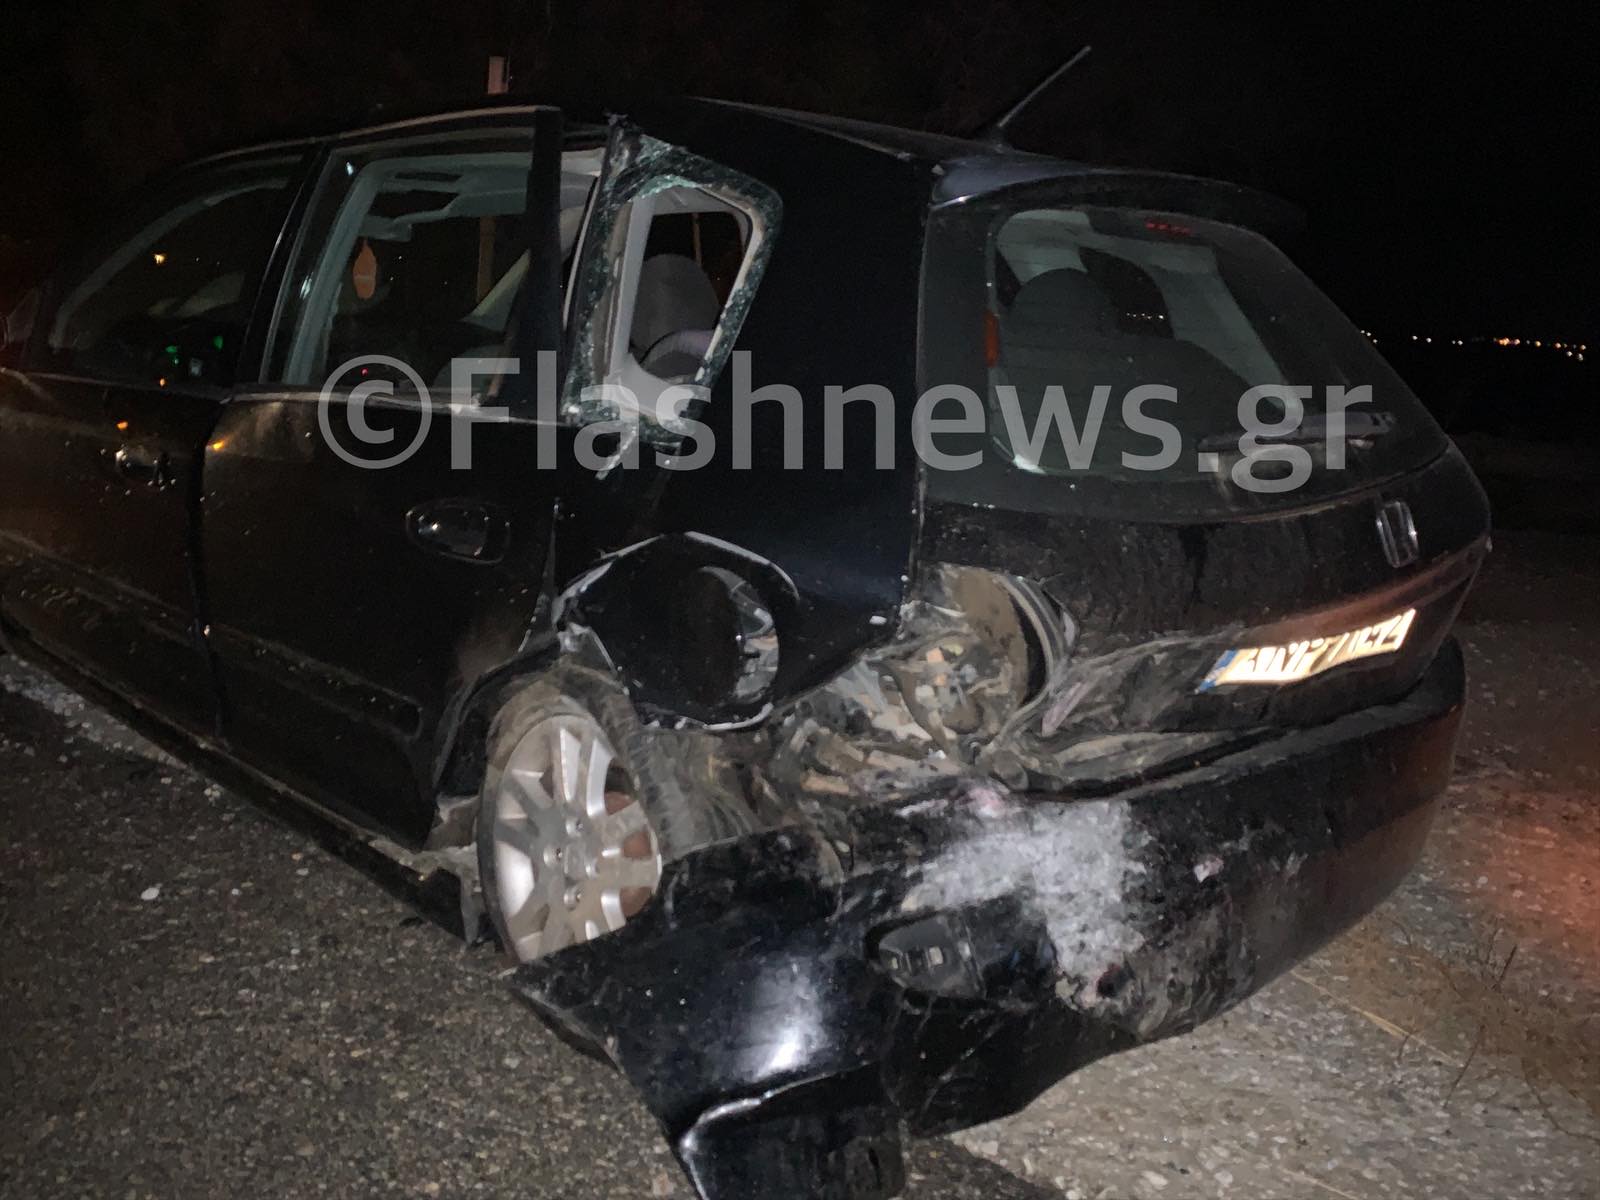 Τροχαίο ατύχημα με τραυματισμό στην εθνική οδό Χανίων – Ρεθύμνου στο Πλατάνι (φωτο)